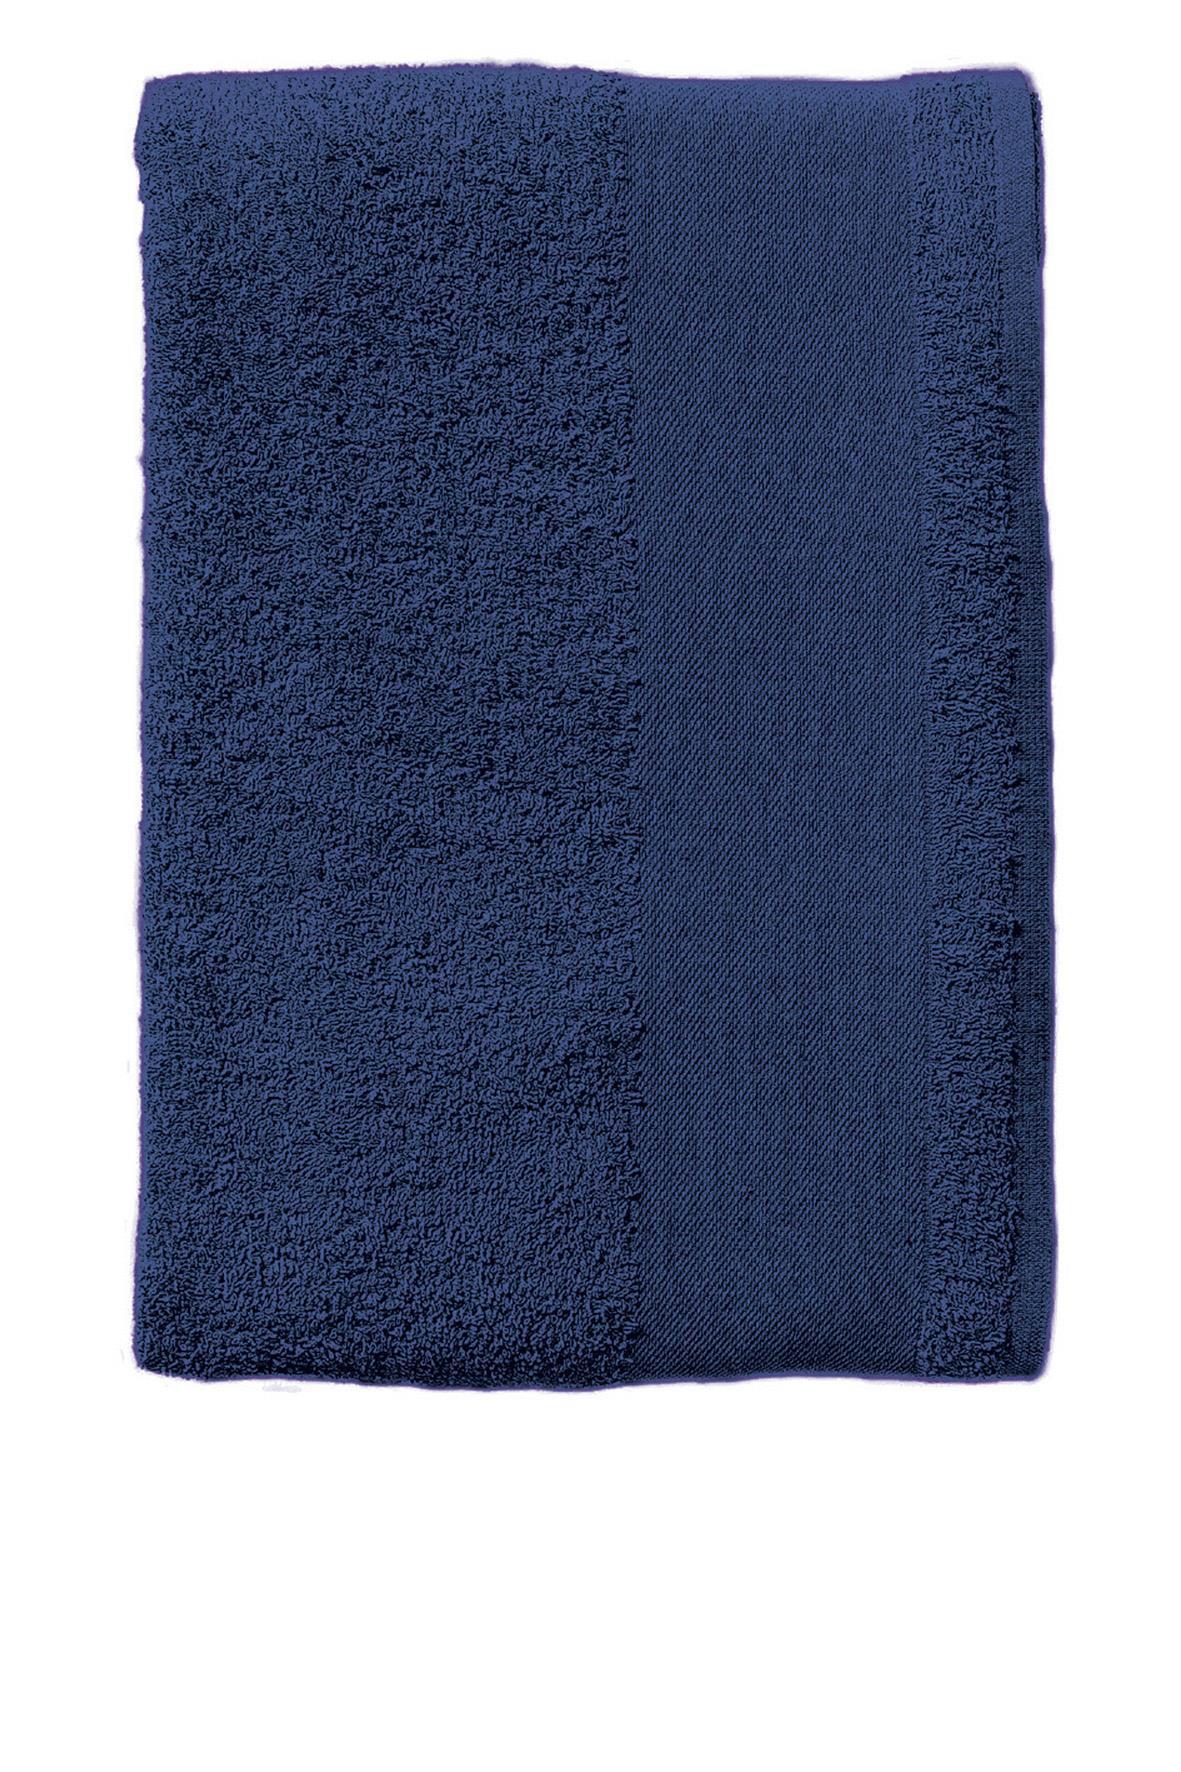 Donkerblauwe Handoeken donker blauw  handdoek diverse maten strandlaken.